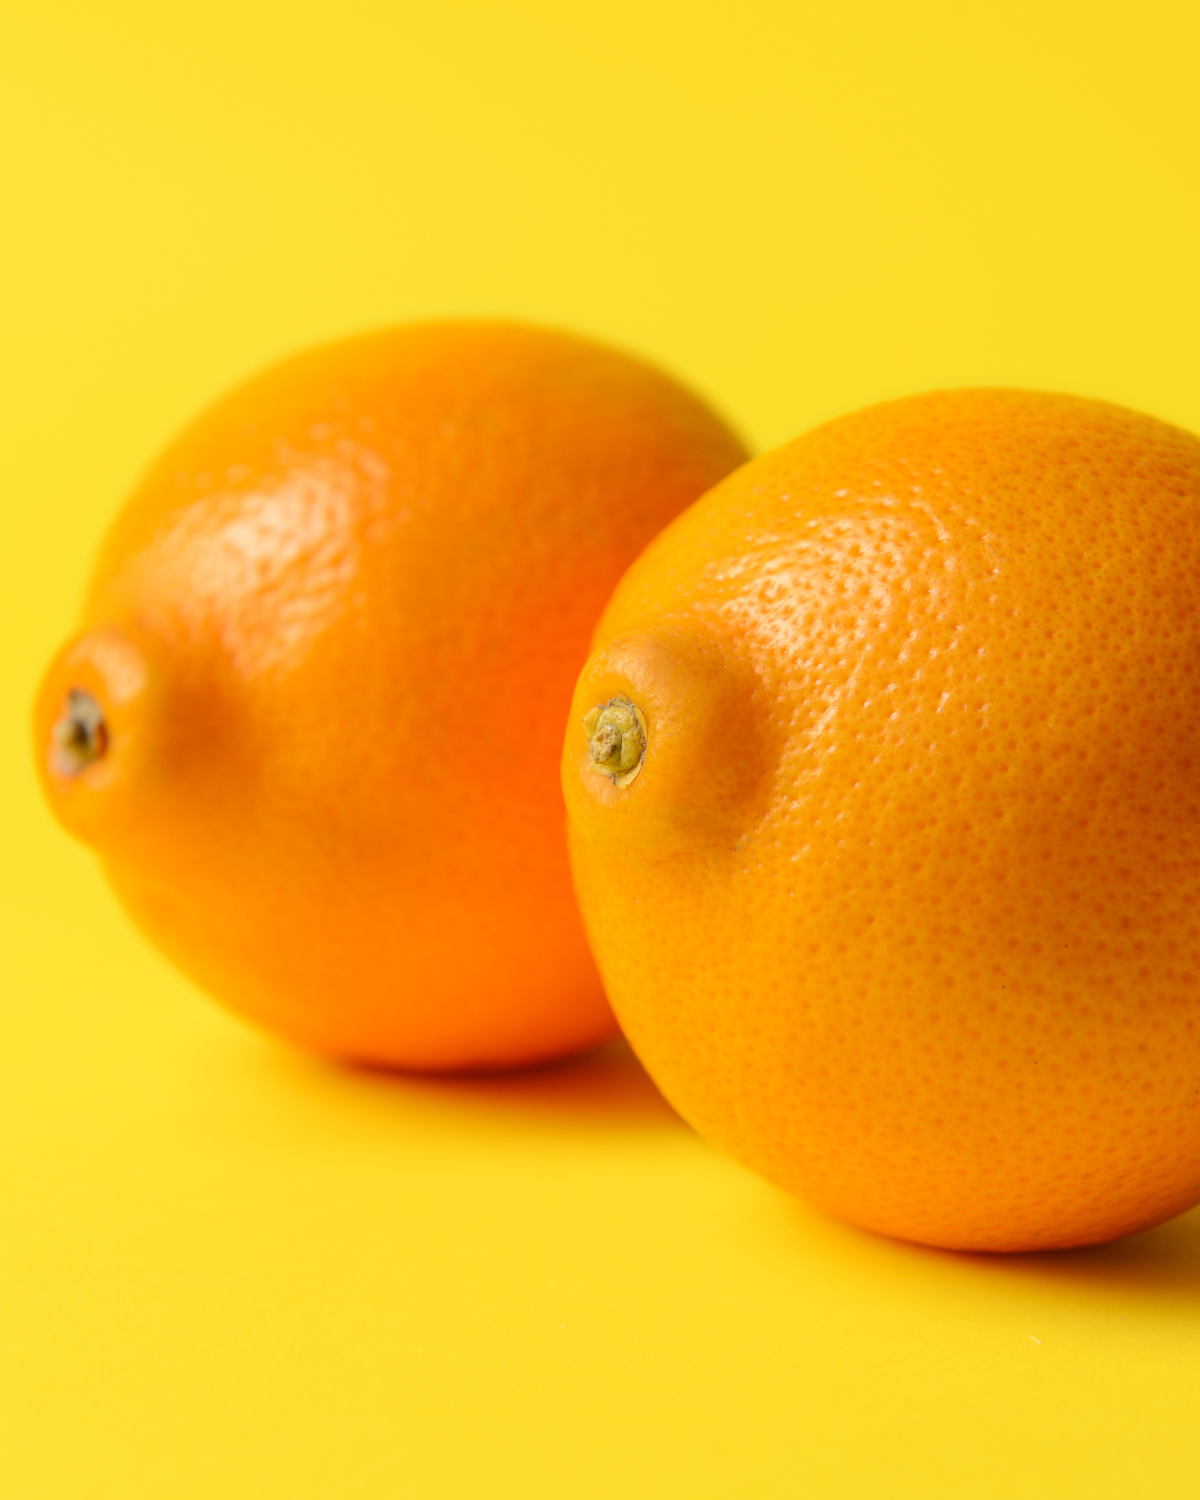 A pair of oranges